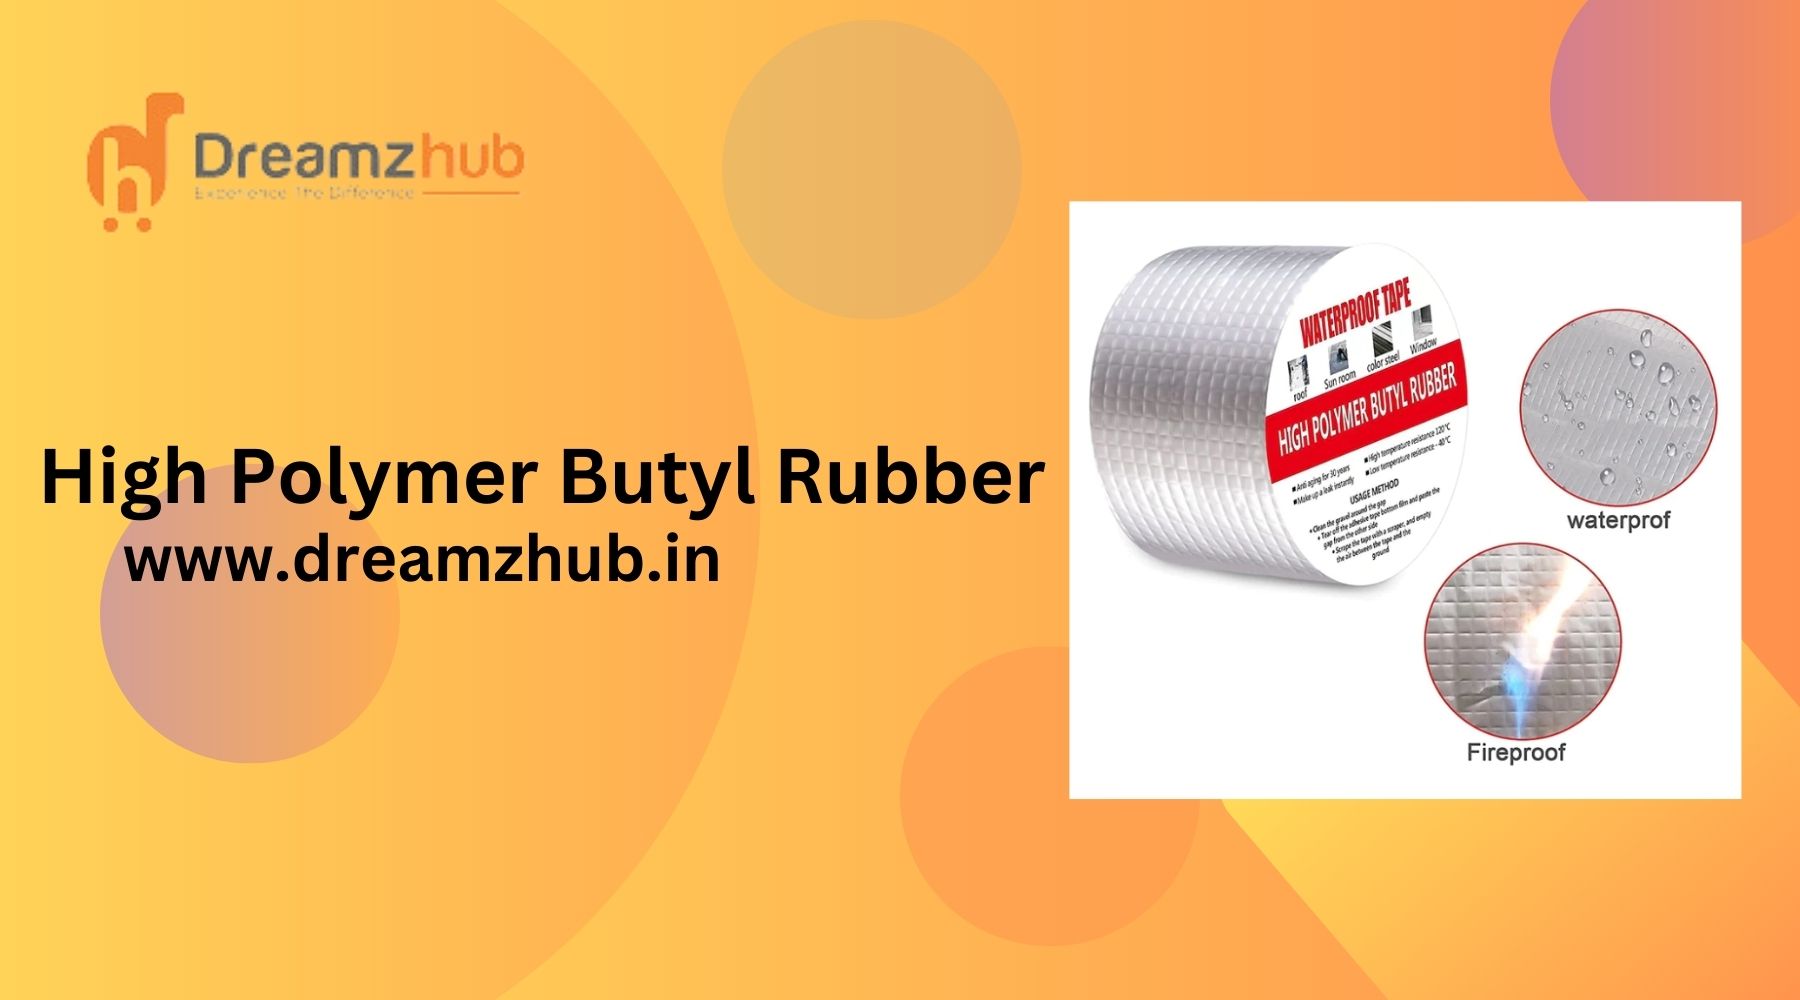 High Polymer Butyl Rubber: An Innovative Advancement in Rubber Technology